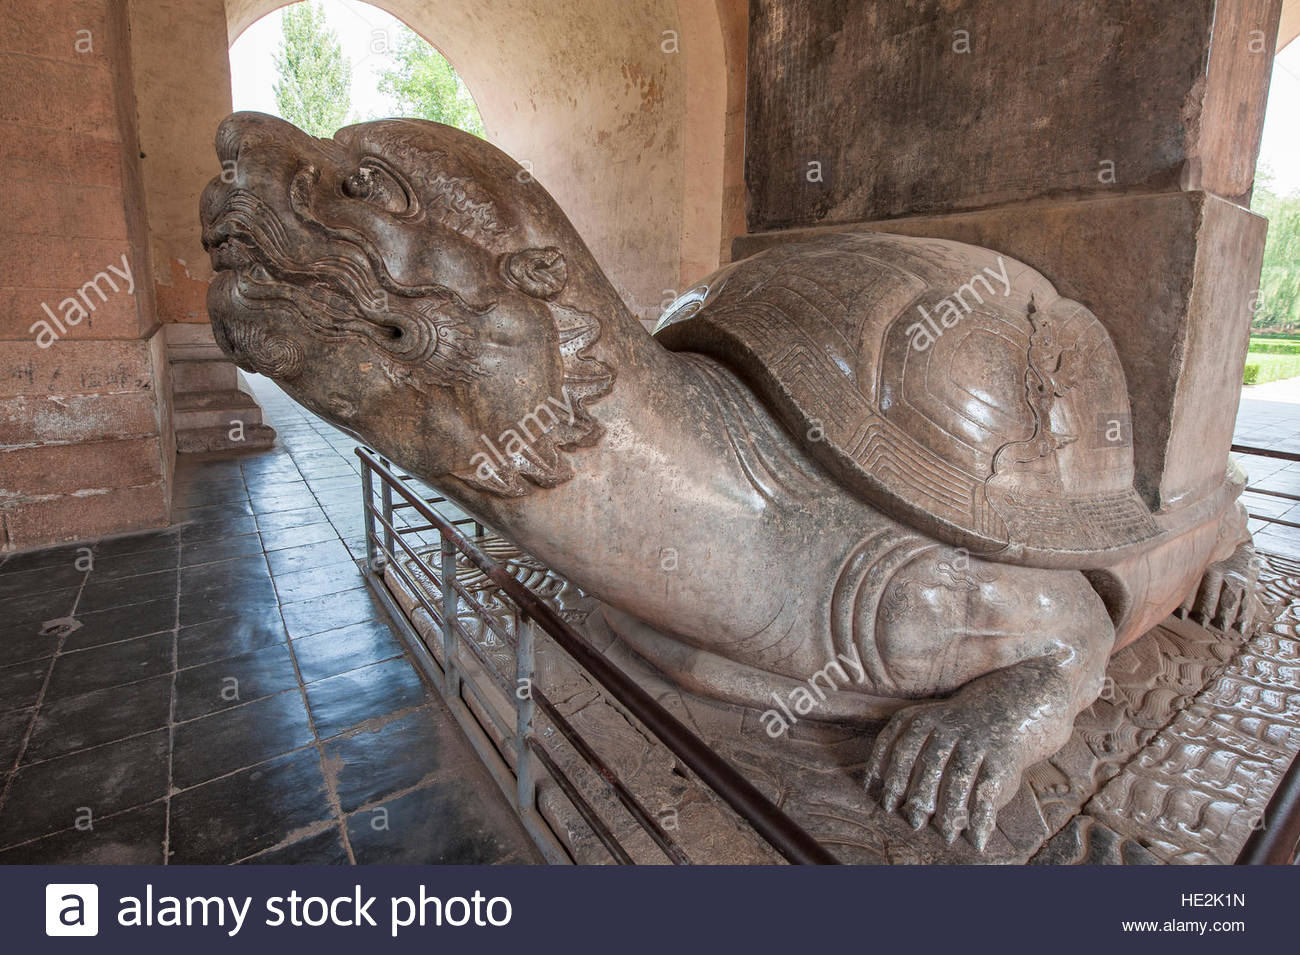 stone-turtle-statue-in-shen-gong-sheng-d